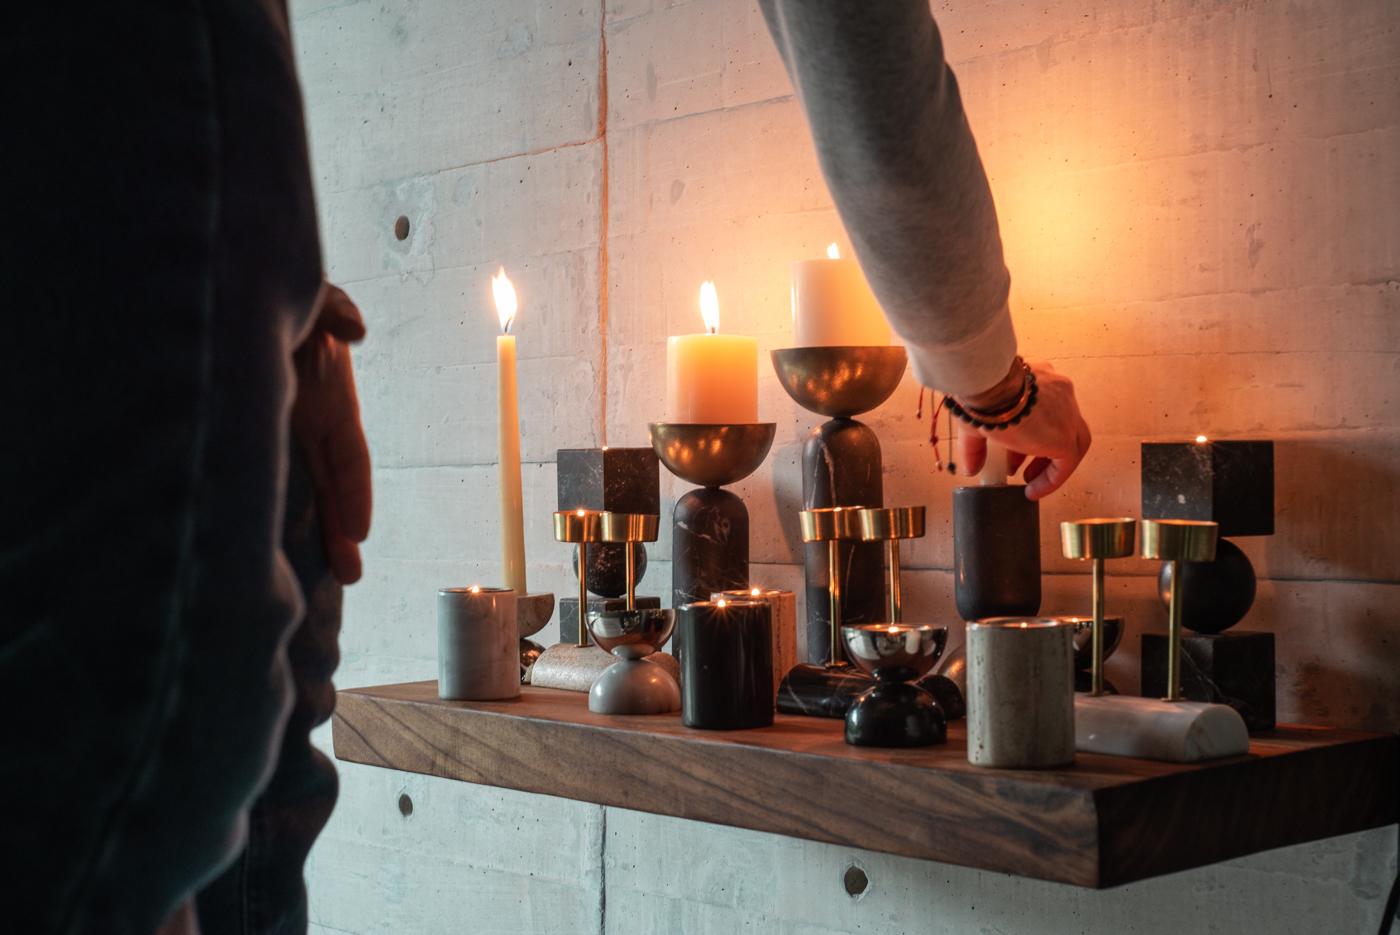 Genießen Sie die schlichte Raffinesse der Gova Kerzenhalter von Bruci. Diese Kerzenständer verströmen mit ihrem minimalistischen und doch imposanten Design einen Hauch von Raffinesse und verleihen jedem Wohnbereich einen Hauch von Luxus. Der Kopf